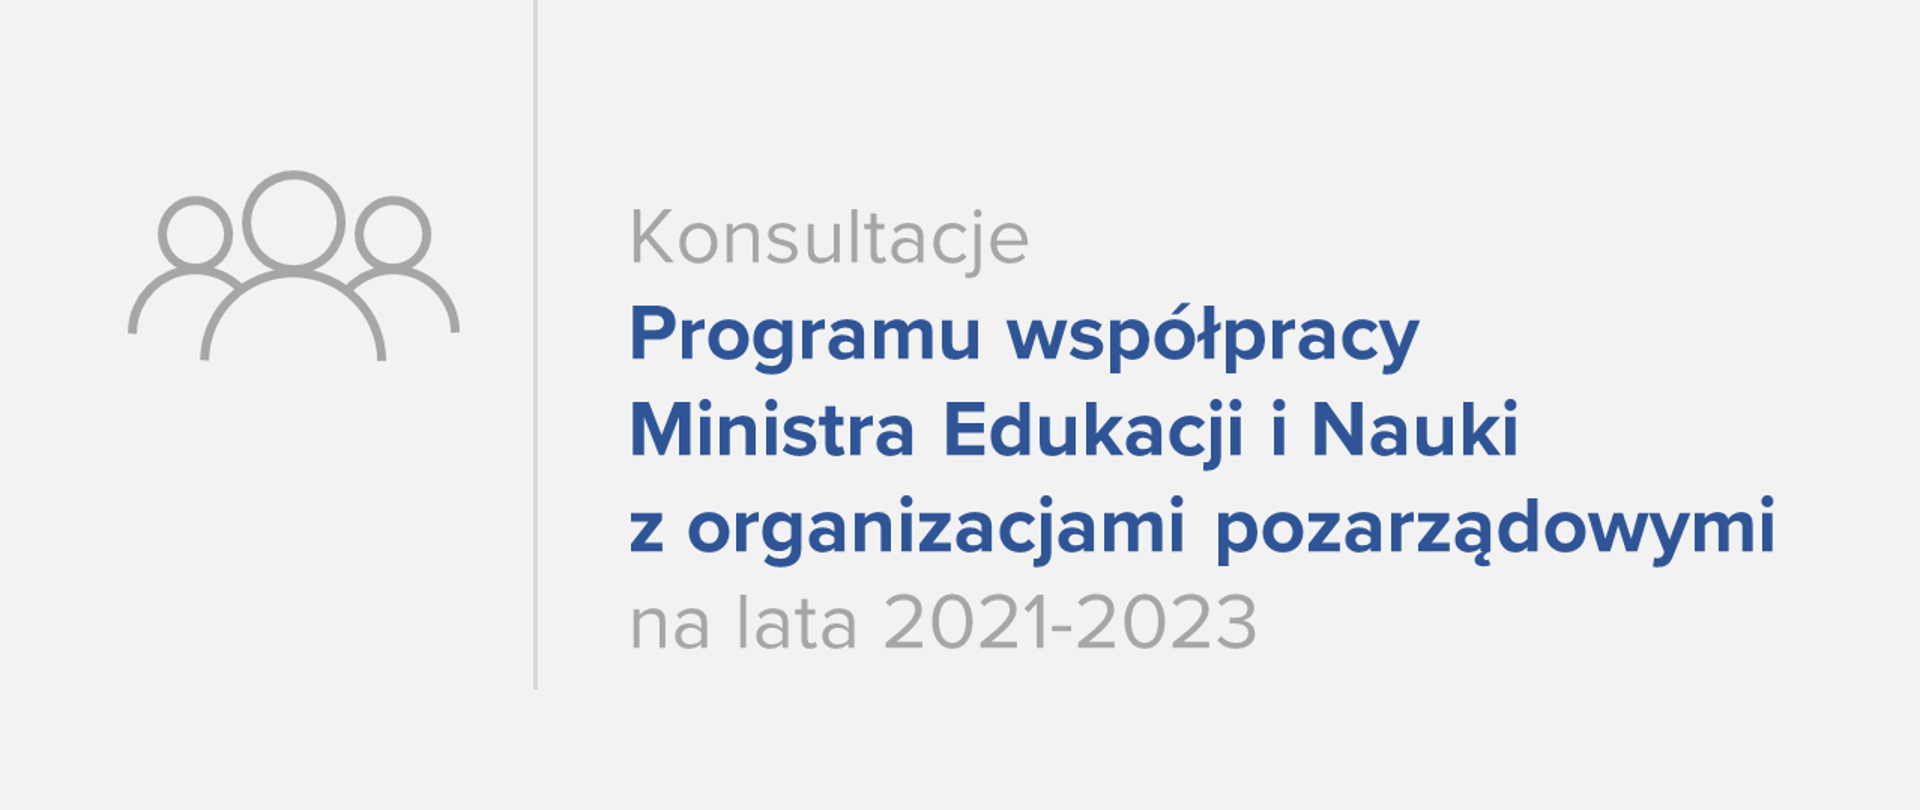 grafika zawierająca informację na temat konsultacji Programu współpracy Ministra Edukacji i Nauki z organizacjami pozarządowymi na lata 2021-2023